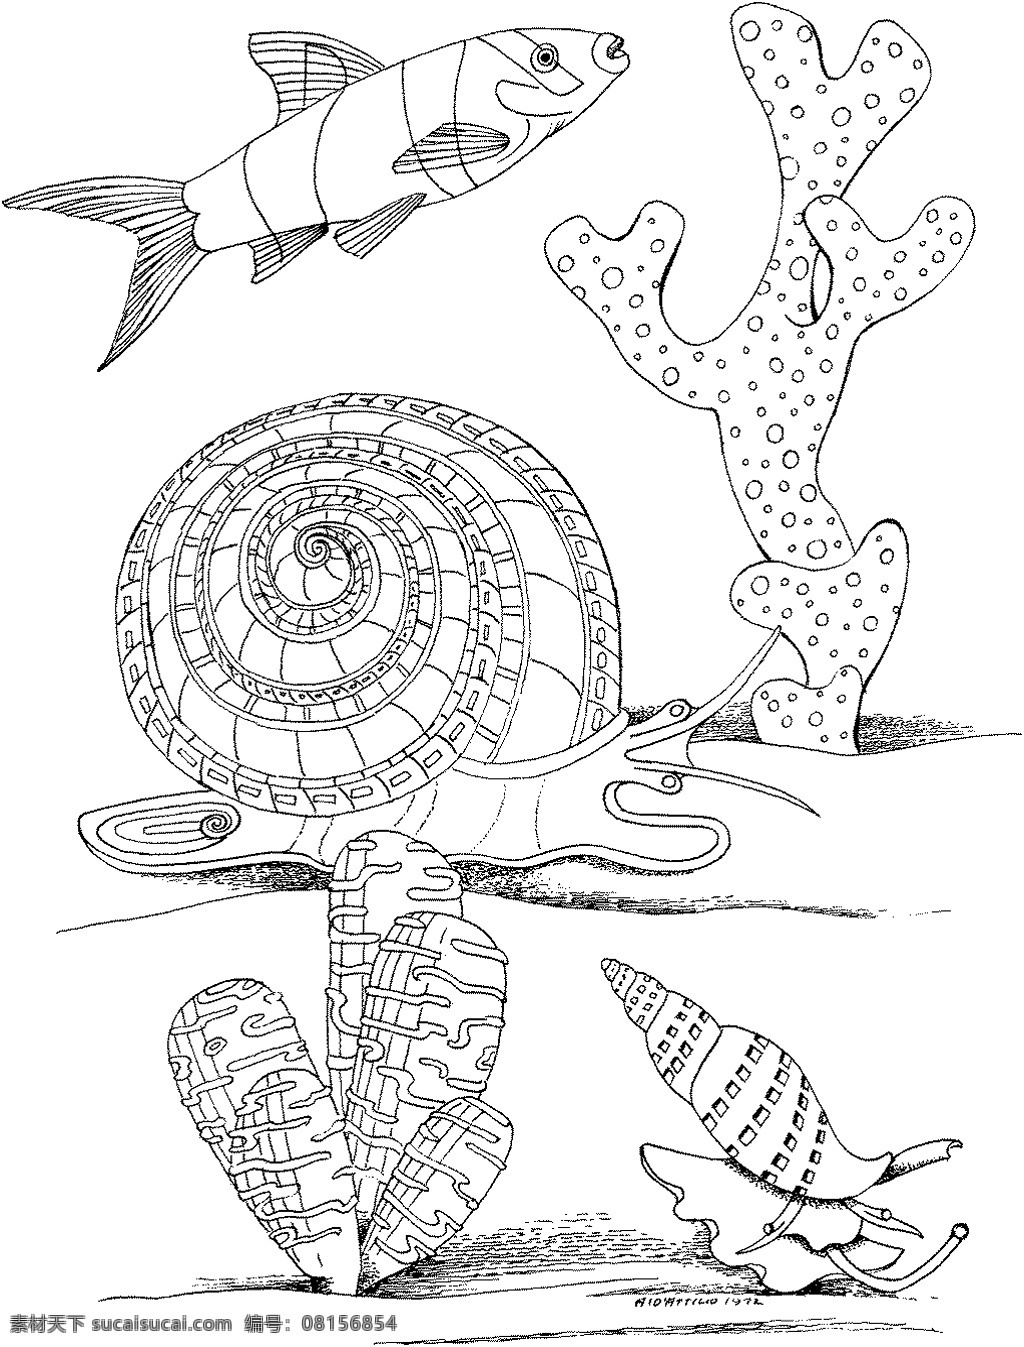 海洋生物 动物素材 海洋 动物 手绘 画 设计素材 动物专辑 素描速写 书画美术 白色